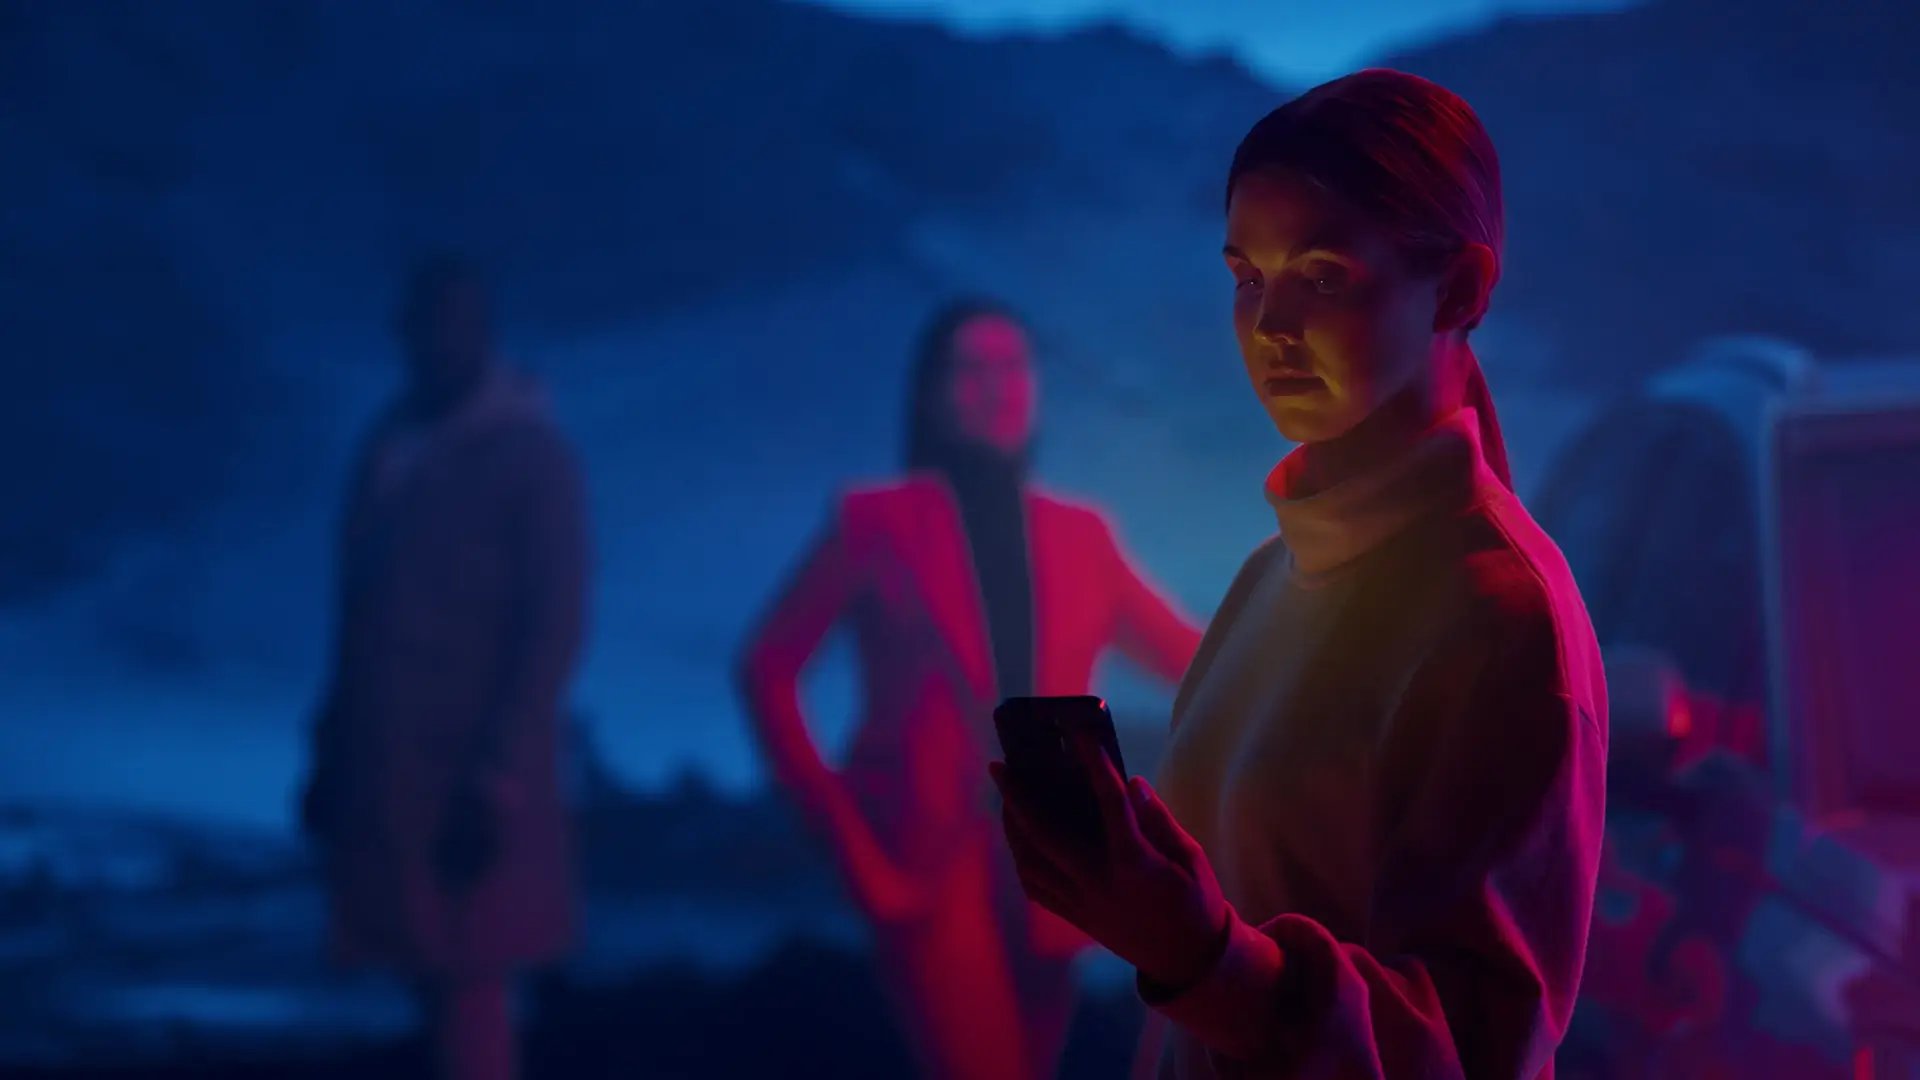 Nainen älypuhelin kädessä taustalla tumman sinisiä vuoria